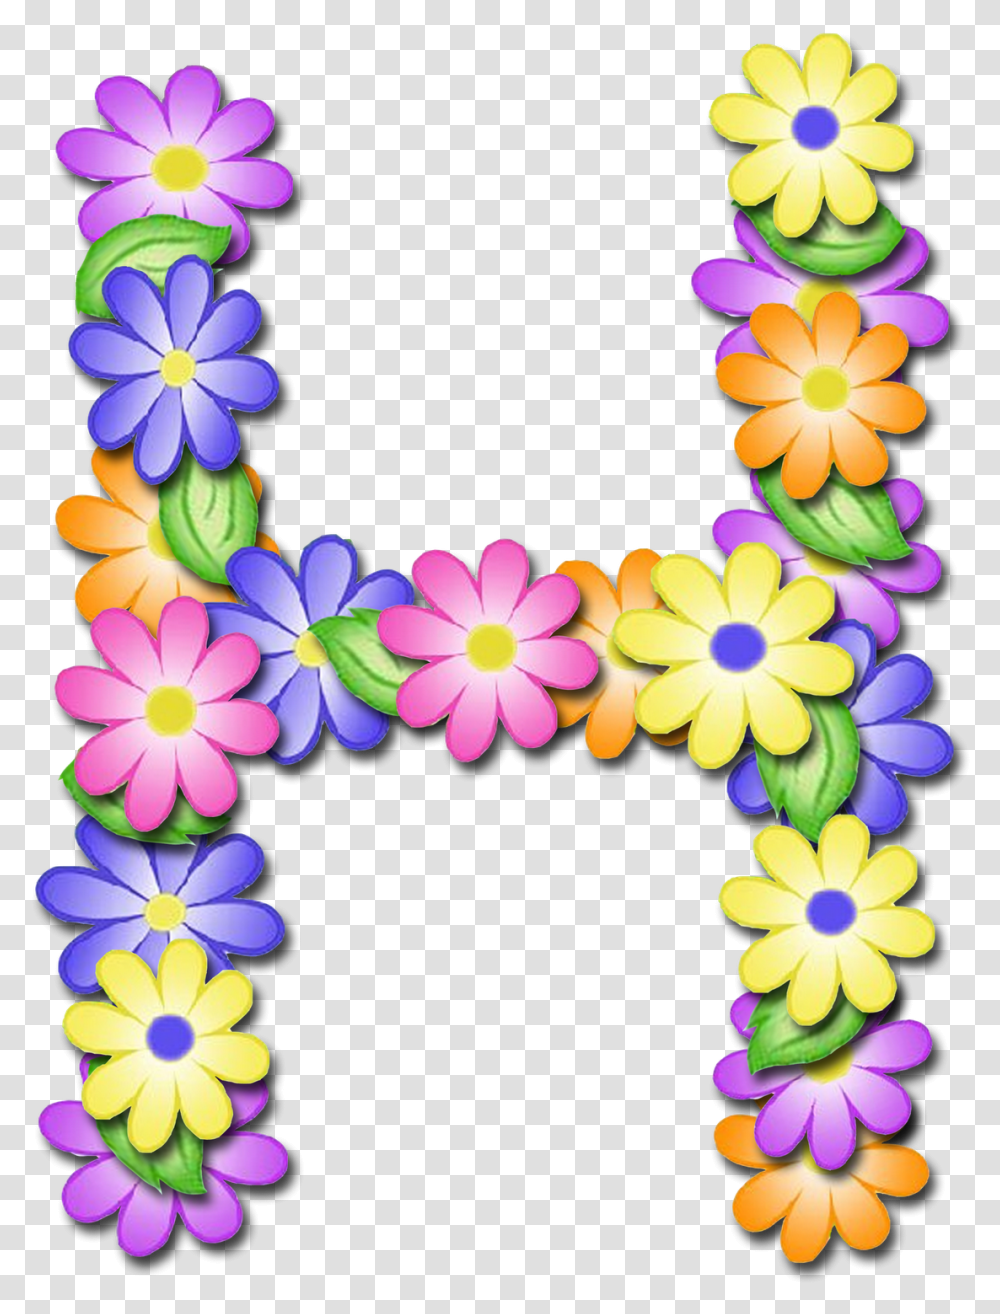 Letras L Con Flores, Floral Design, Pattern Transparent Png